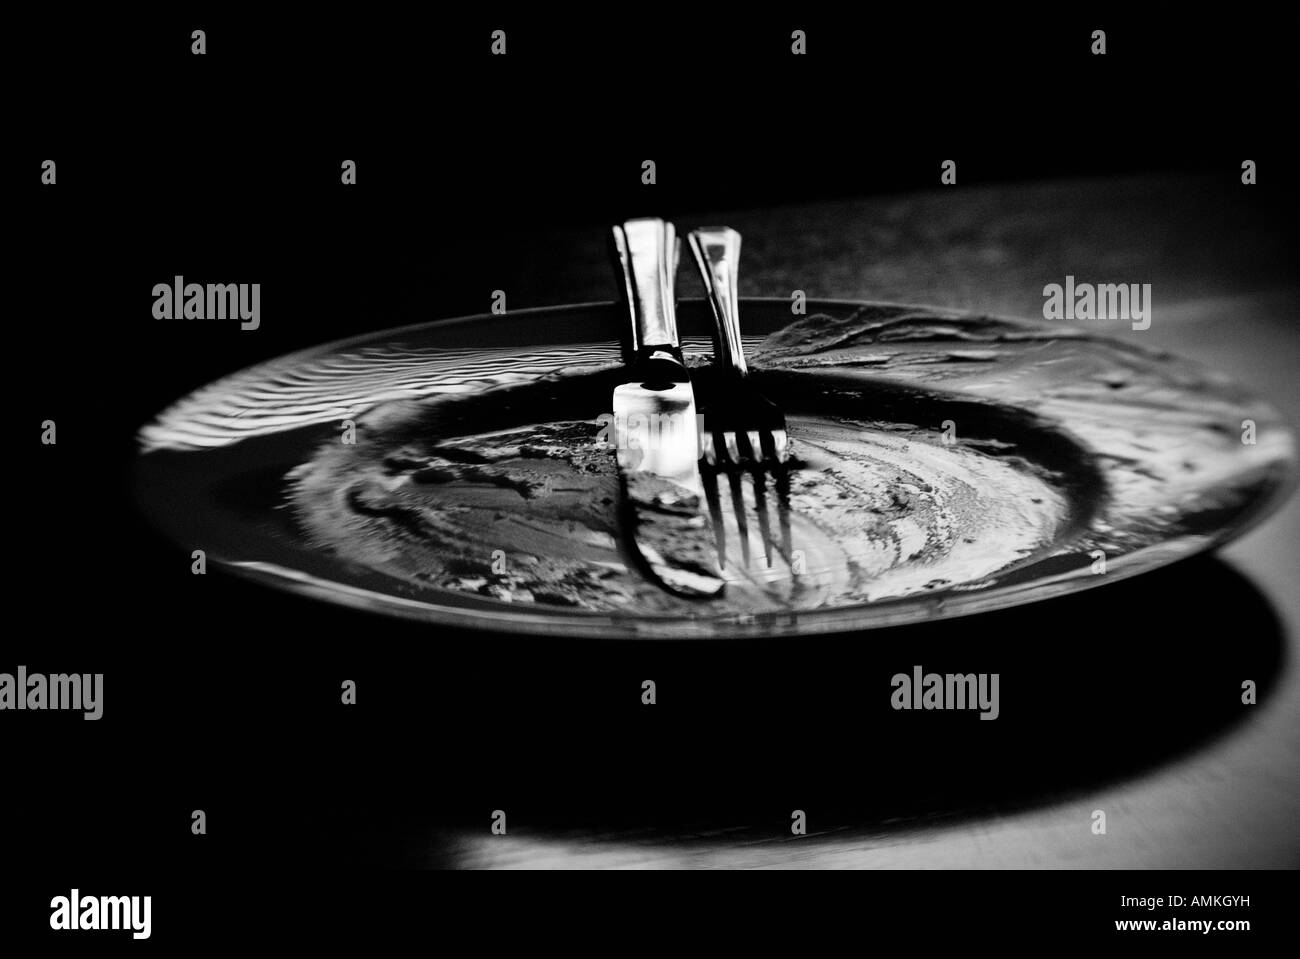 Schwarz / weiß Bild eines leeren Teller und Besteck Stockfoto